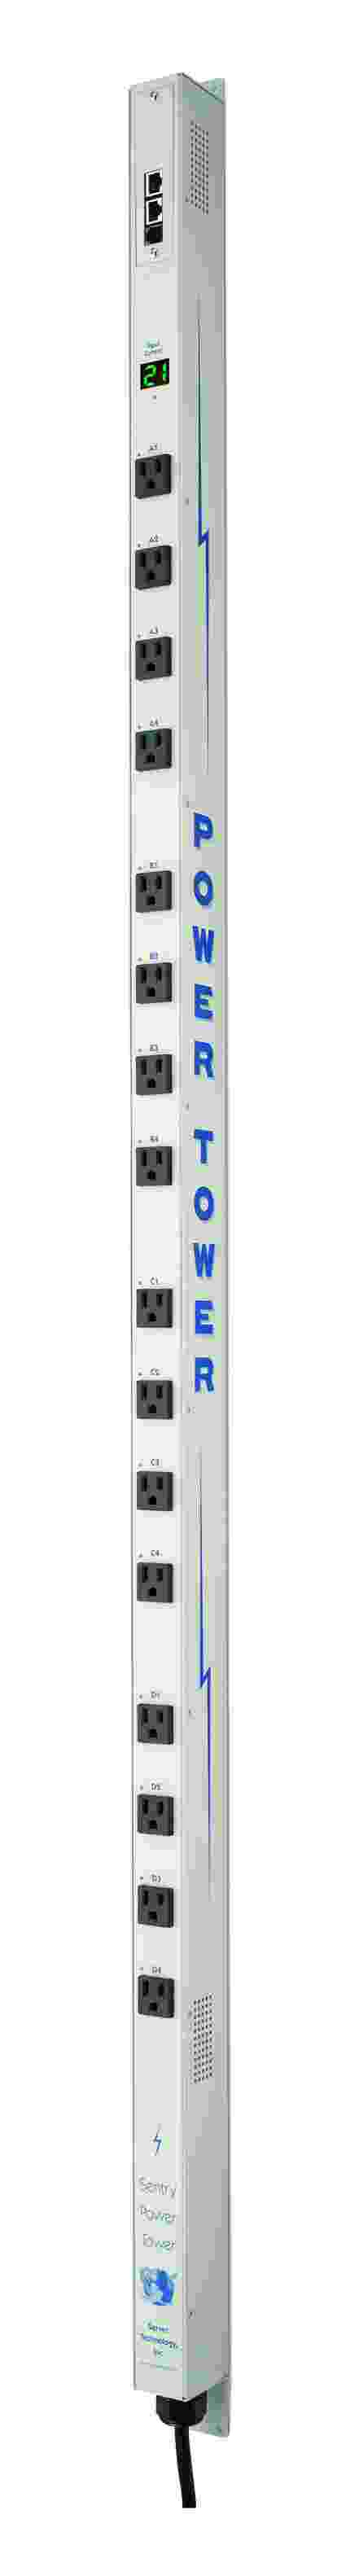 Power Tower XL vertical